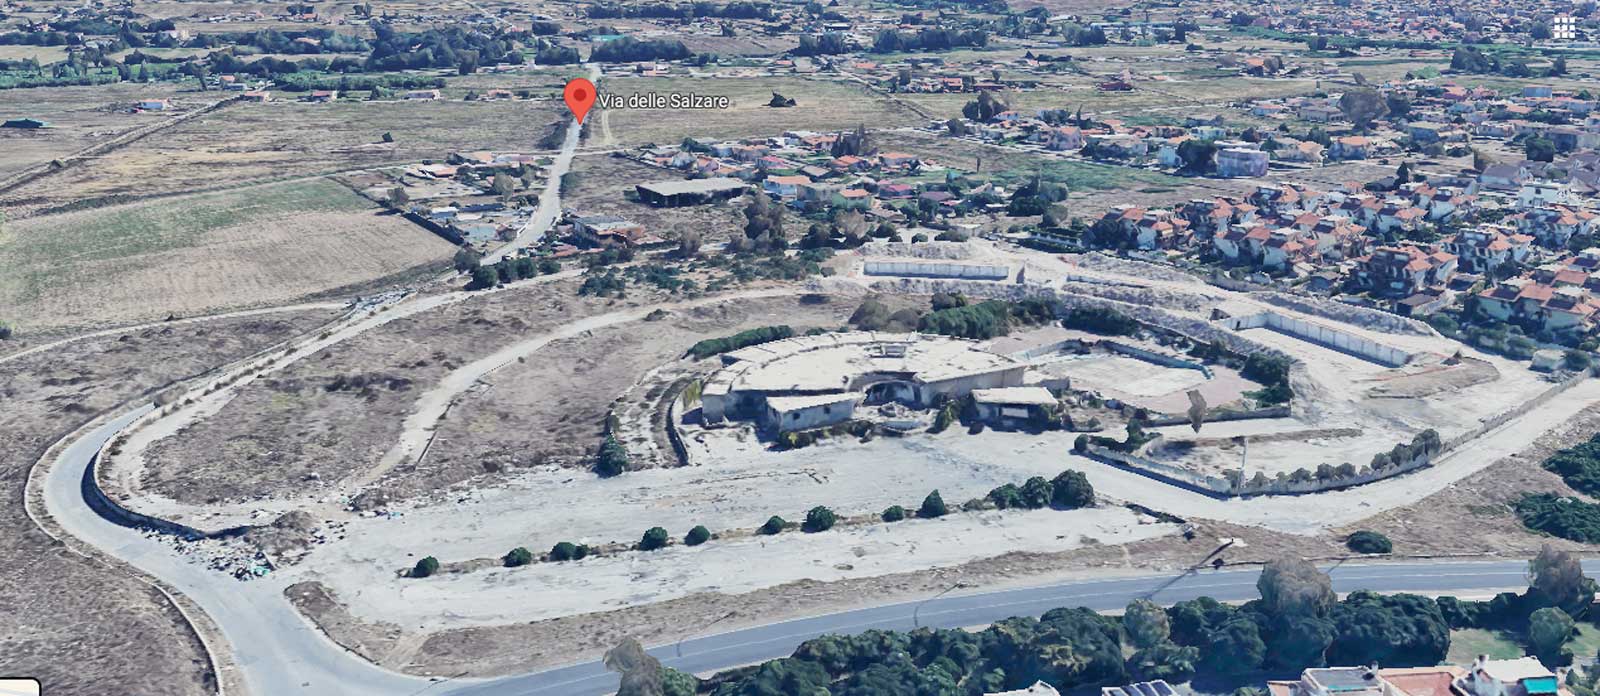 L'area di Ardea detta delle Salkzare, vista dall'alto. Foto Google Maps elaborata con Intelligenza Artificiale